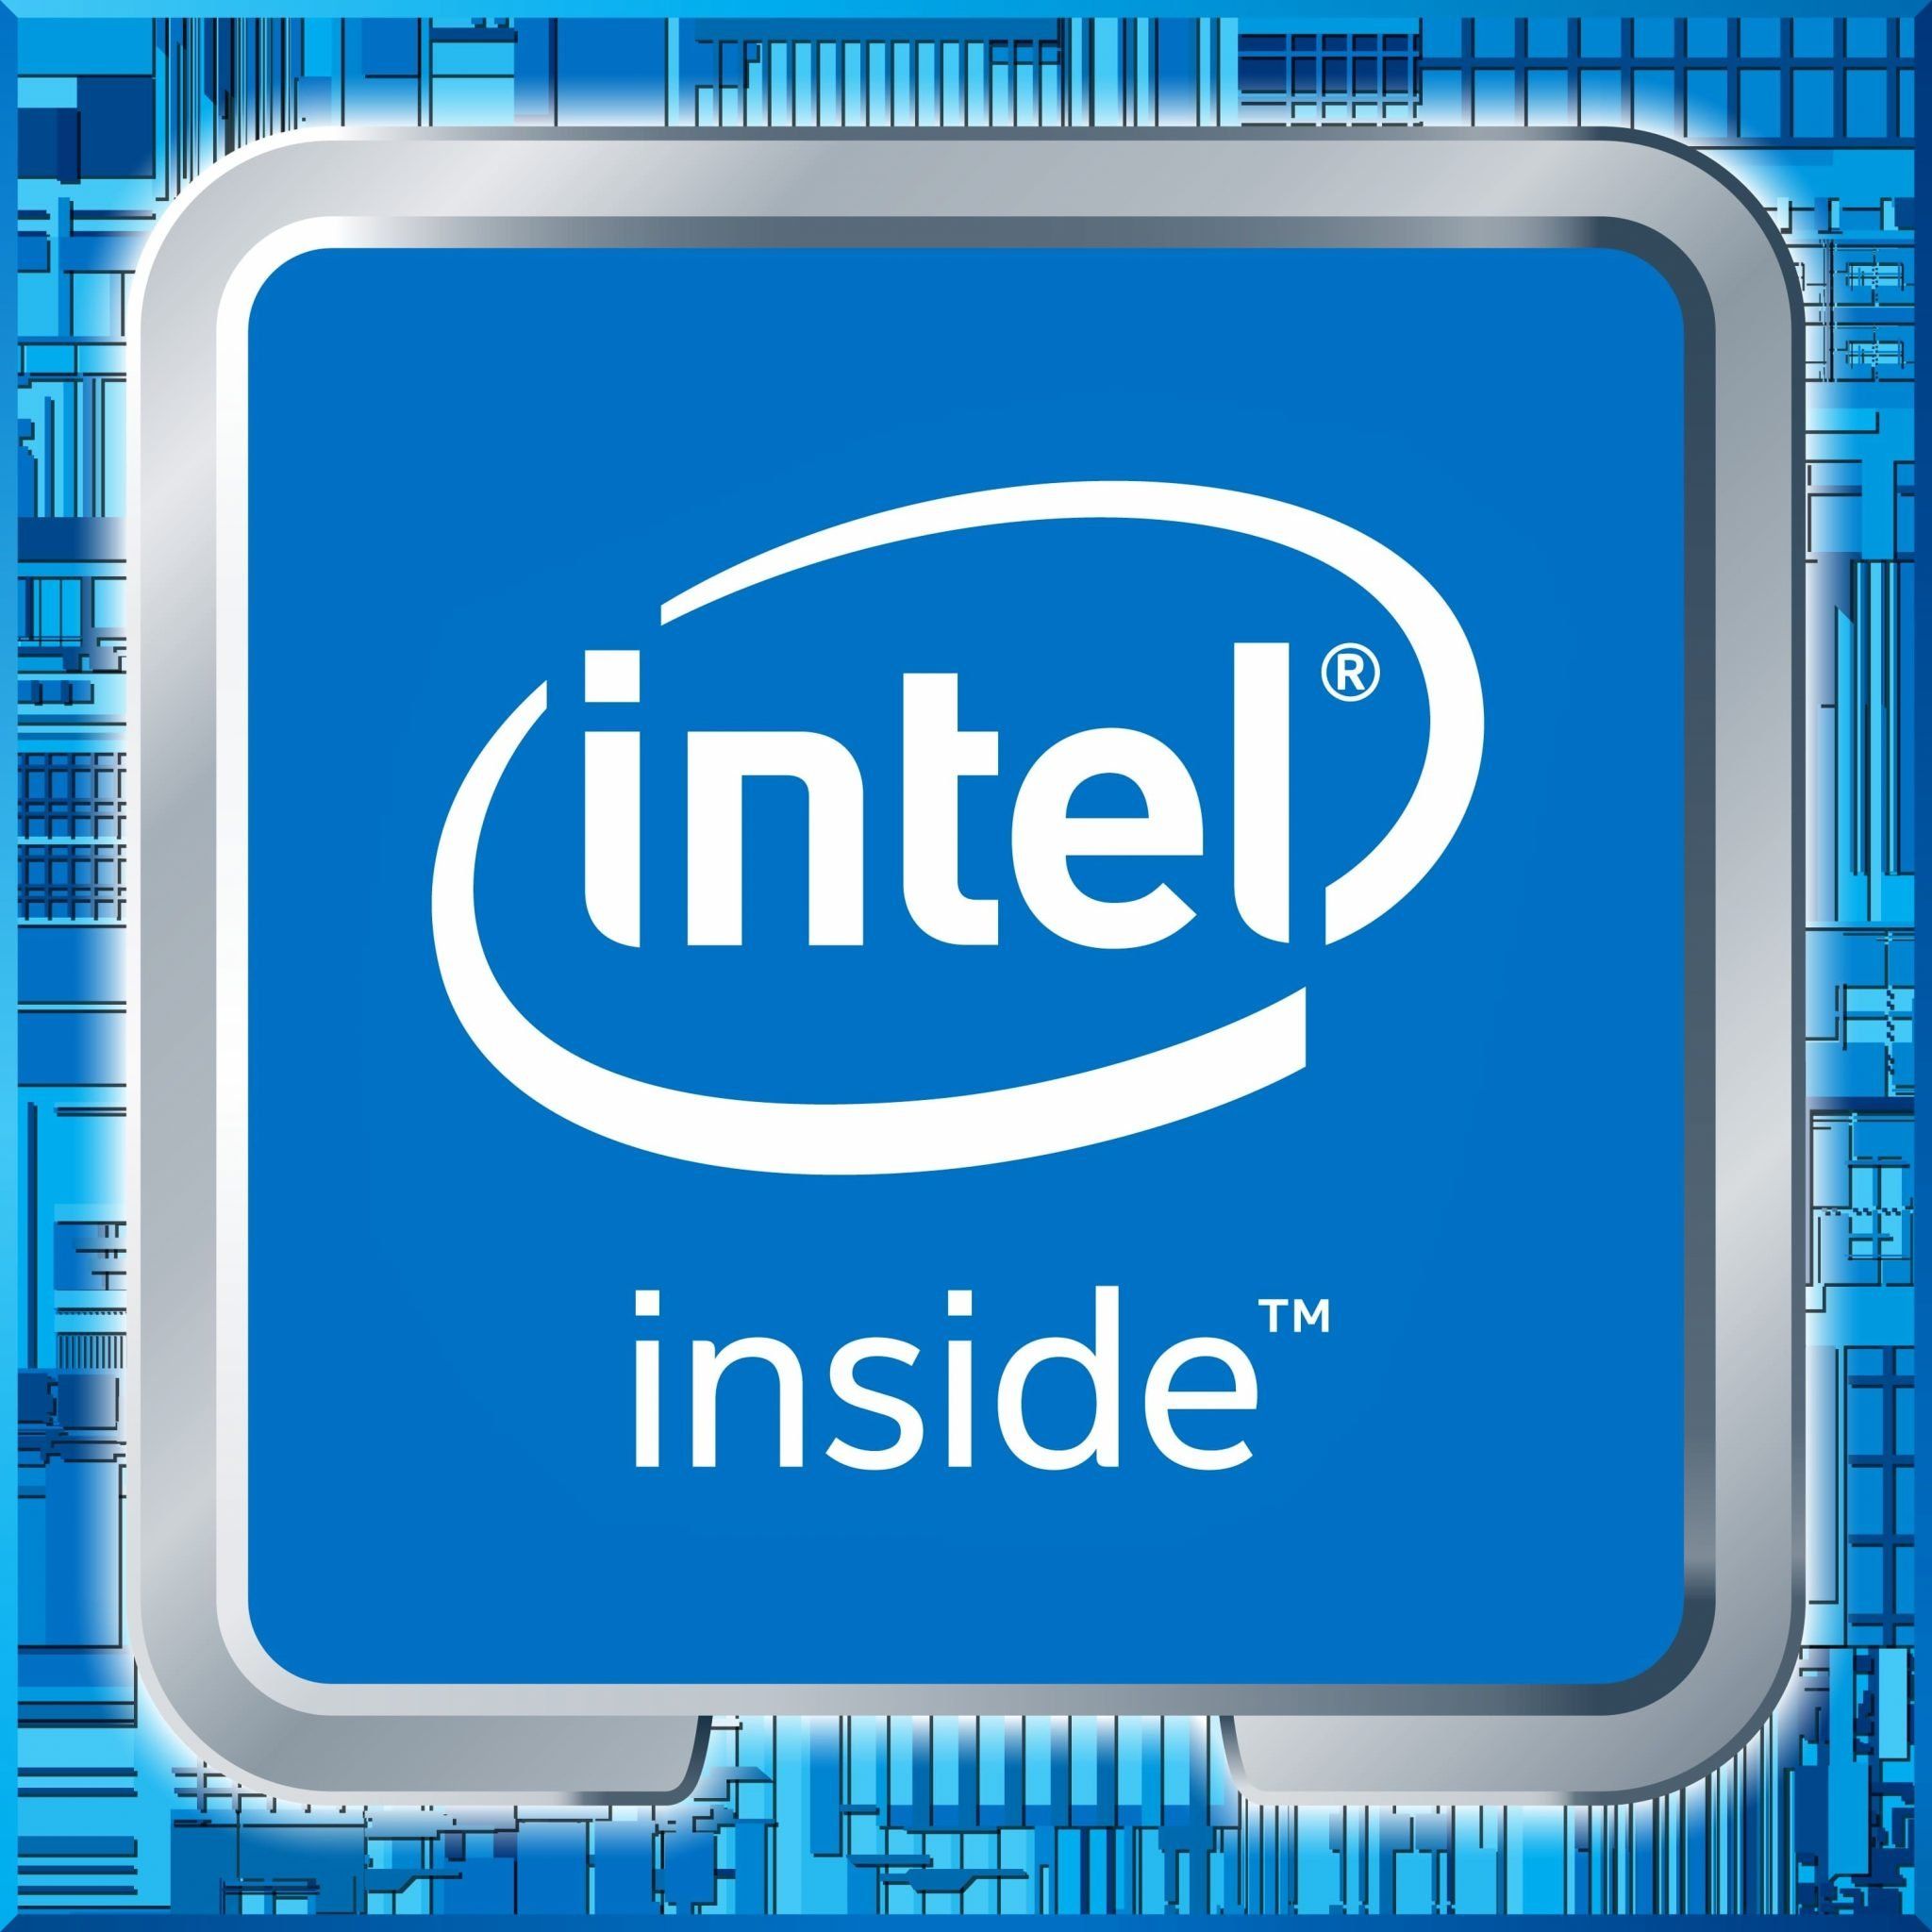 Звук интел. Intel inside Core i7 logo. Интел пентиум инсайд. Intel Celeron inside logo. Процессор Intel inside.